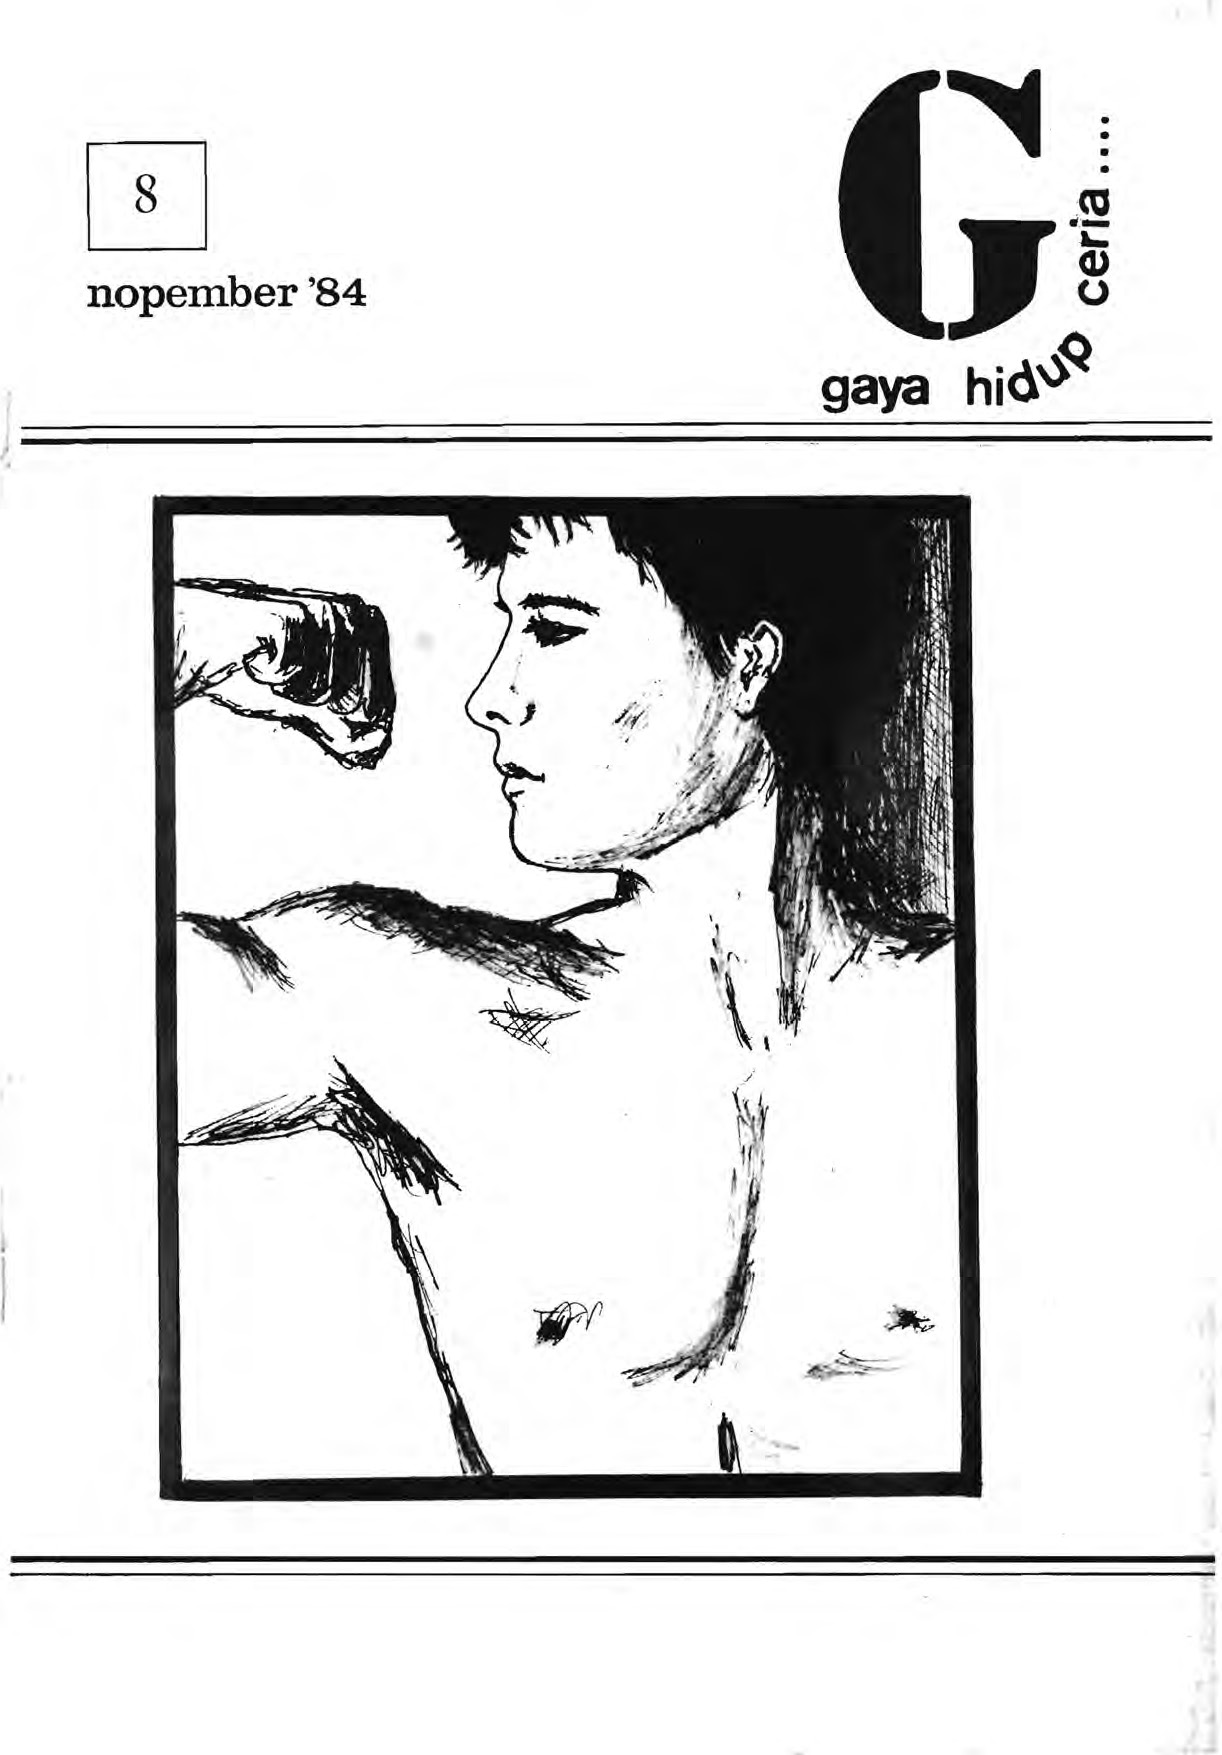 Sampul majalah Gaya Hidup Ceria pada 1982. Foto oleh Queer Indonesia Archive.